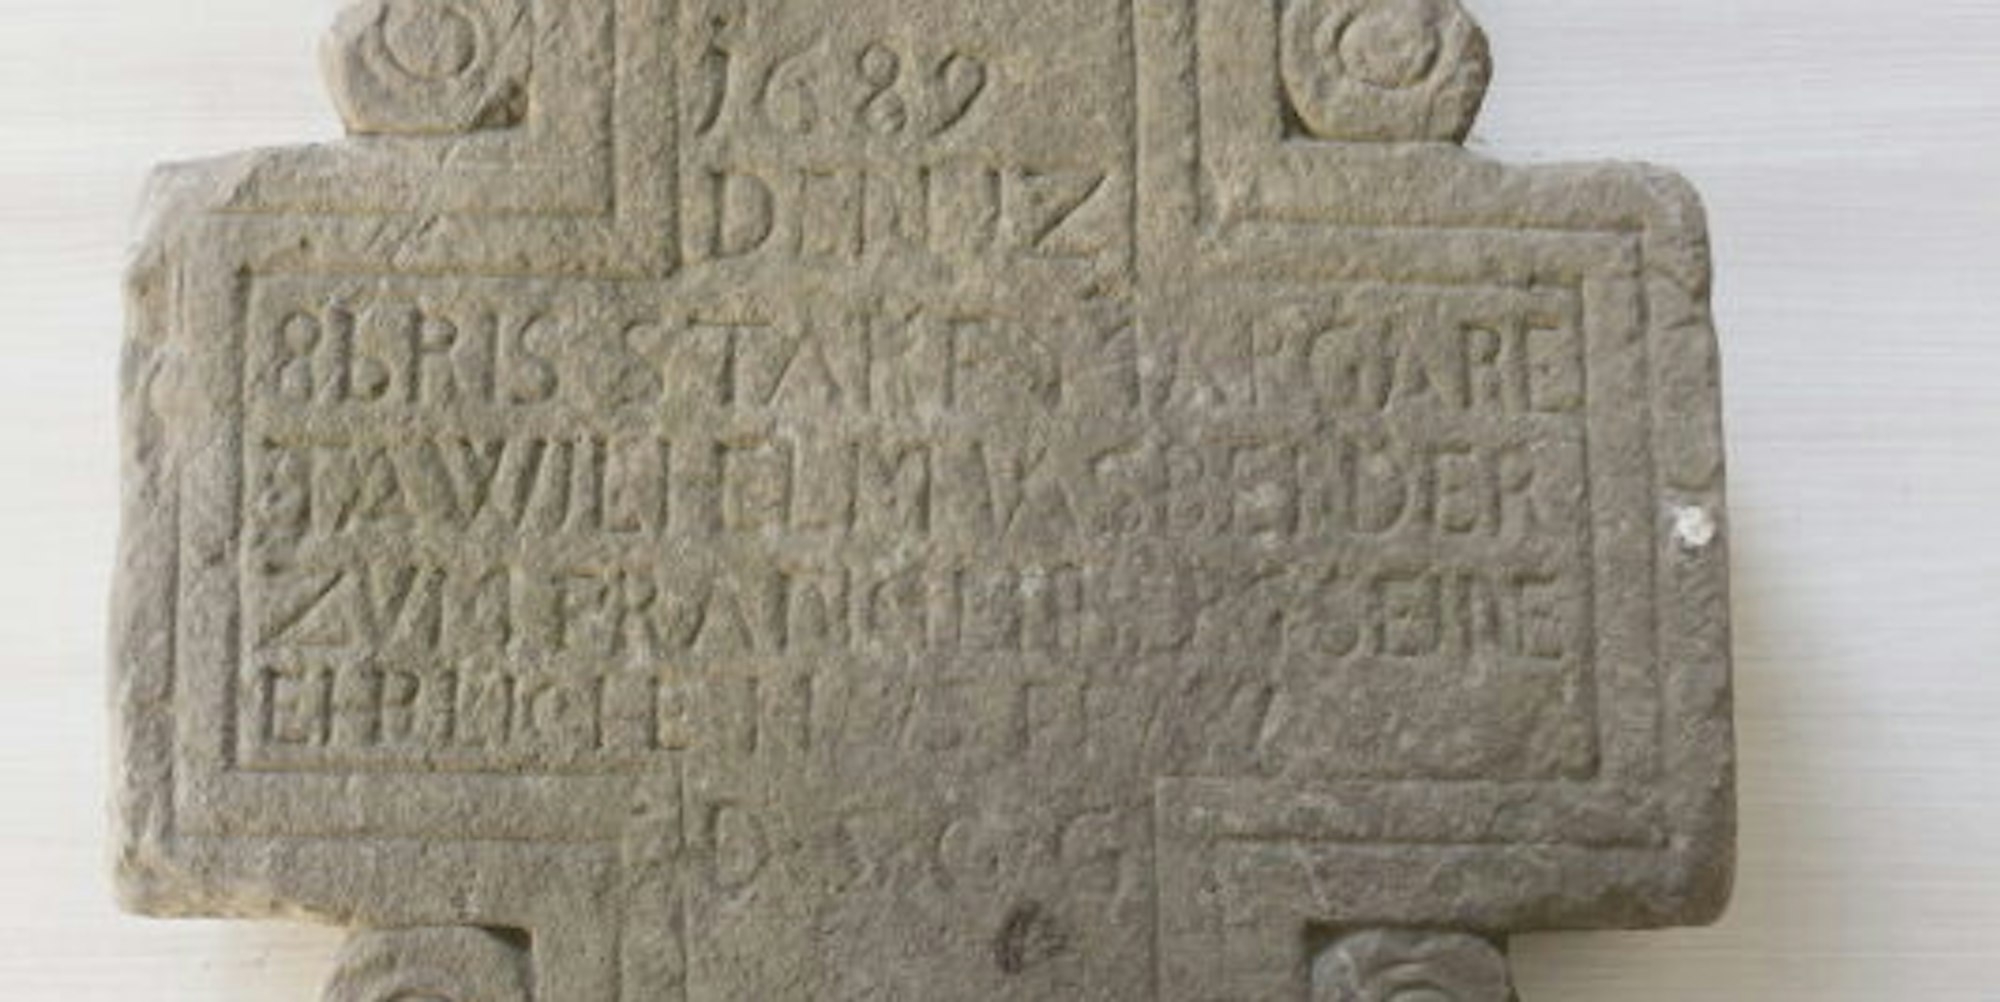 Das Datum „1689“ ist auf dem Grabstein deutlich zu lesen.